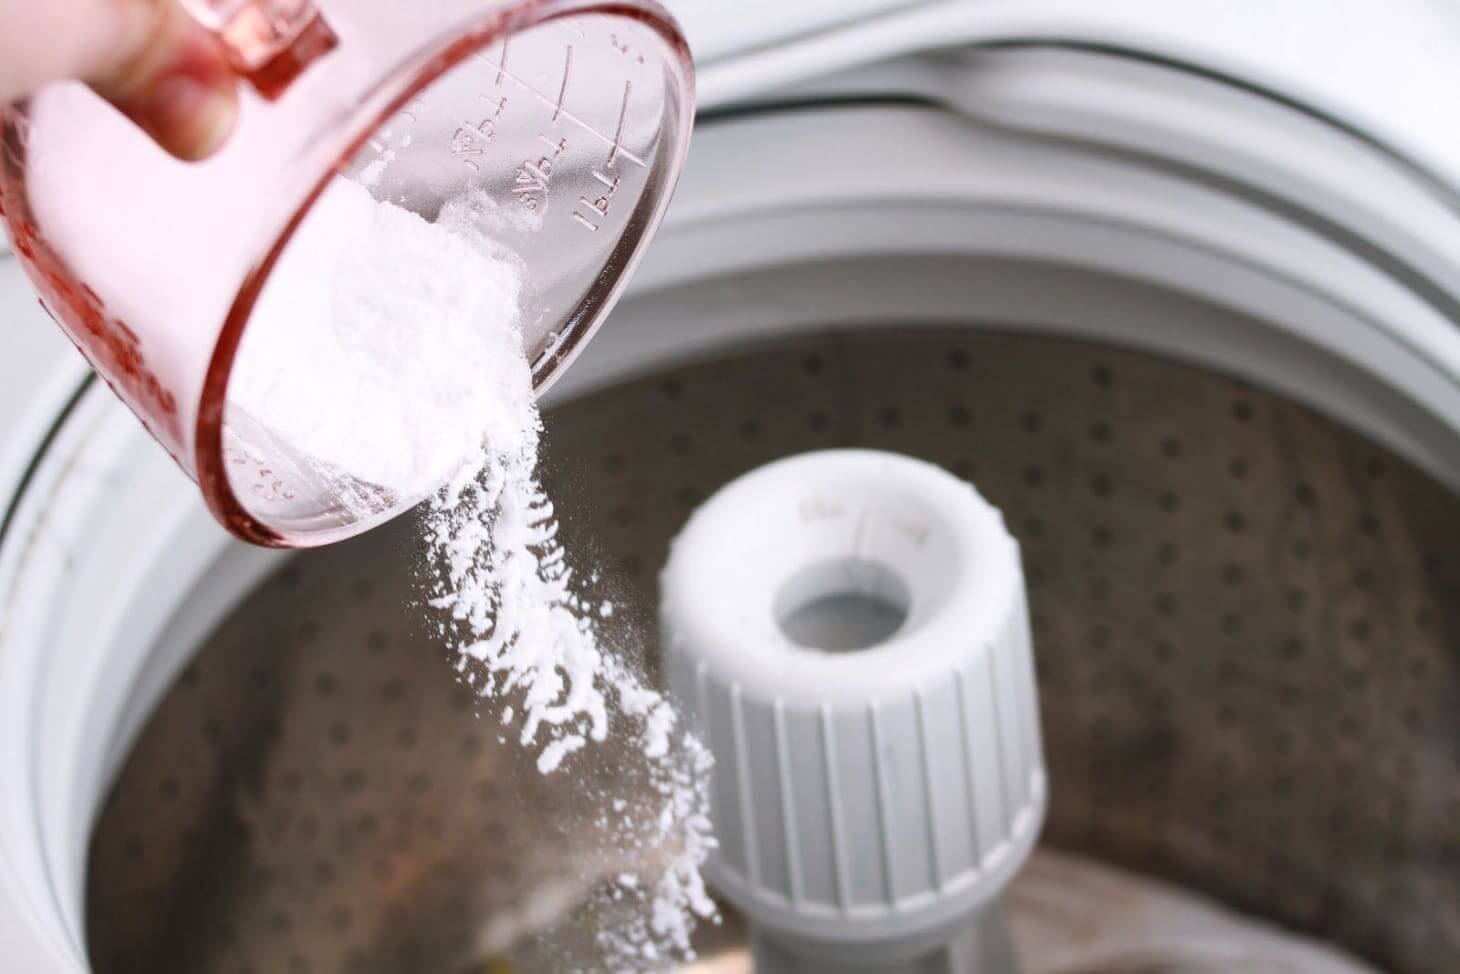 Плесень в стиральной машине: простые советы по устранению в домашних условиях